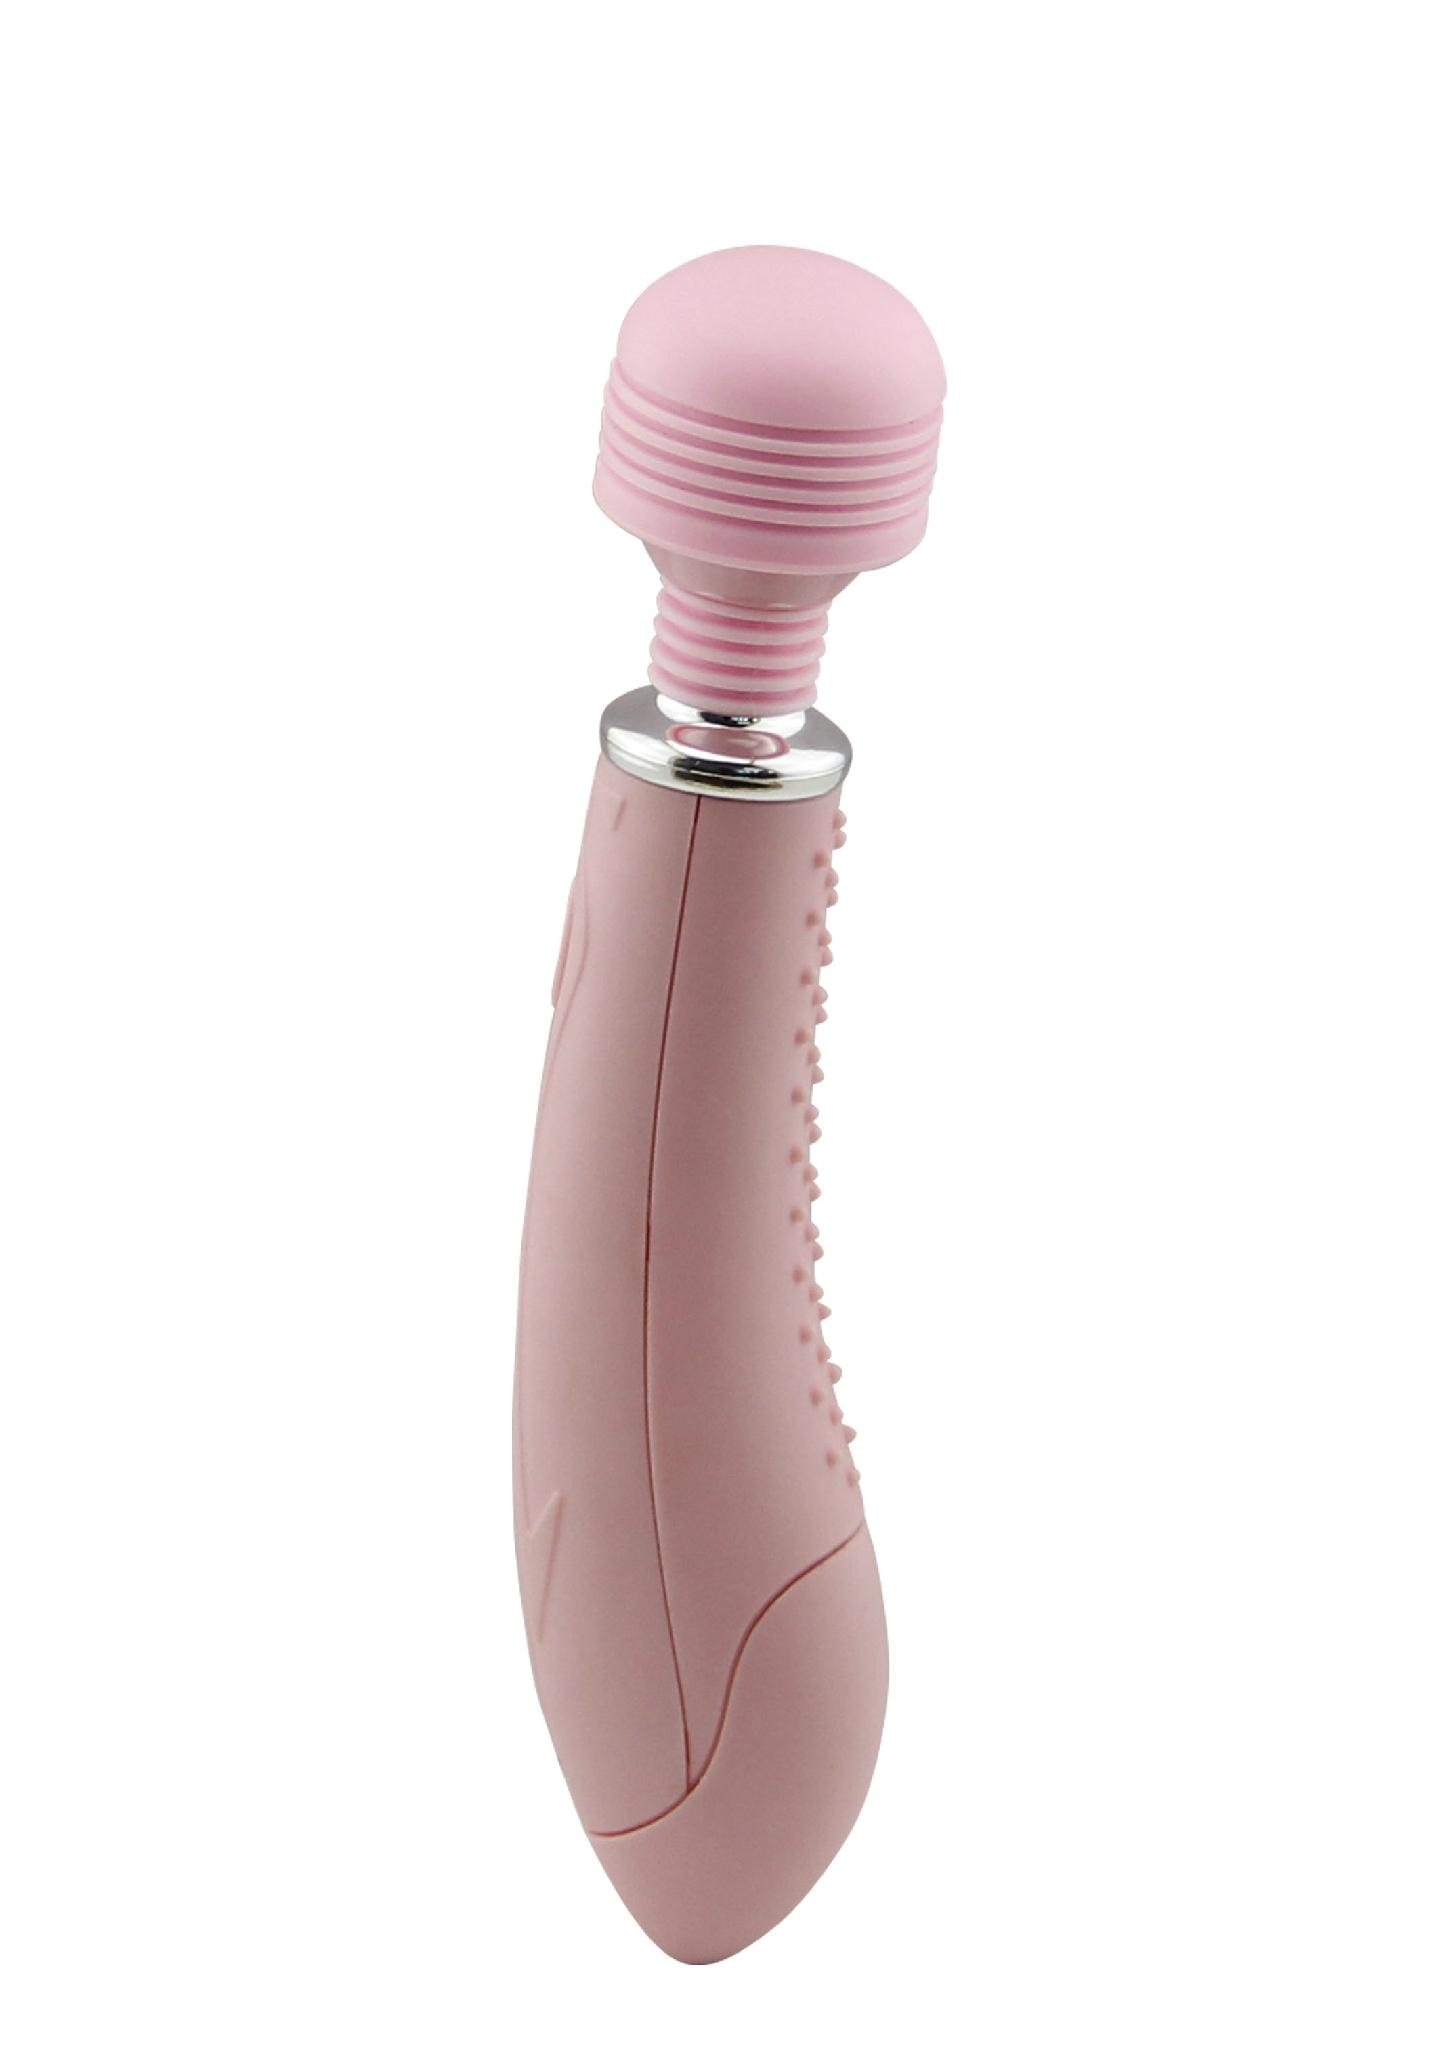  AV Massager For Women Vibrator Adult Products  For Women Sex Toys  3